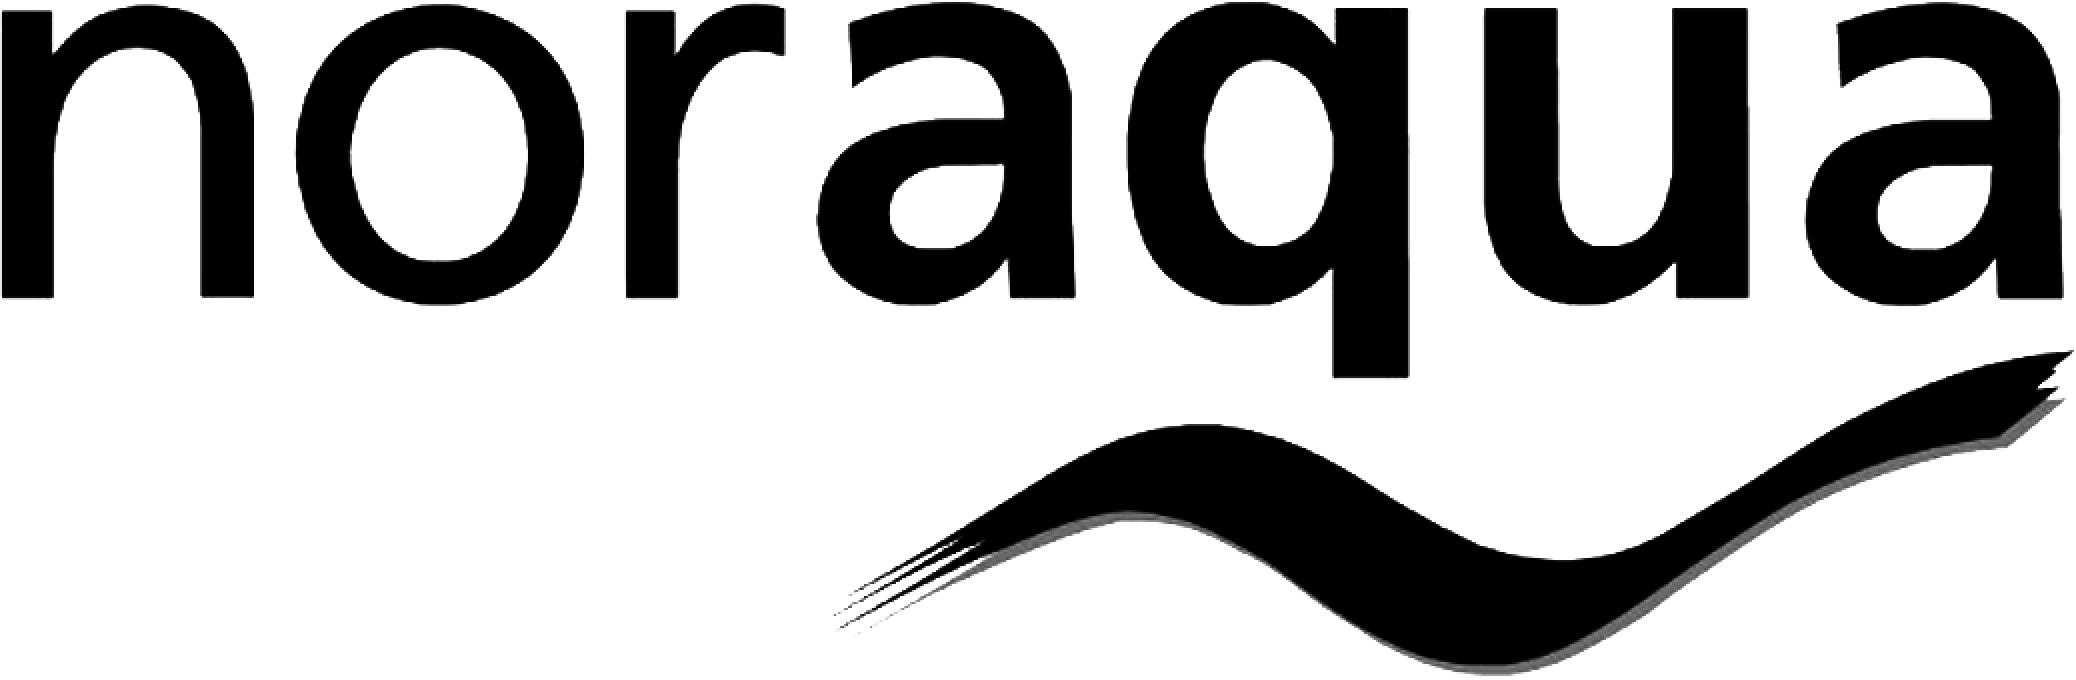 Logo Ecophos tối